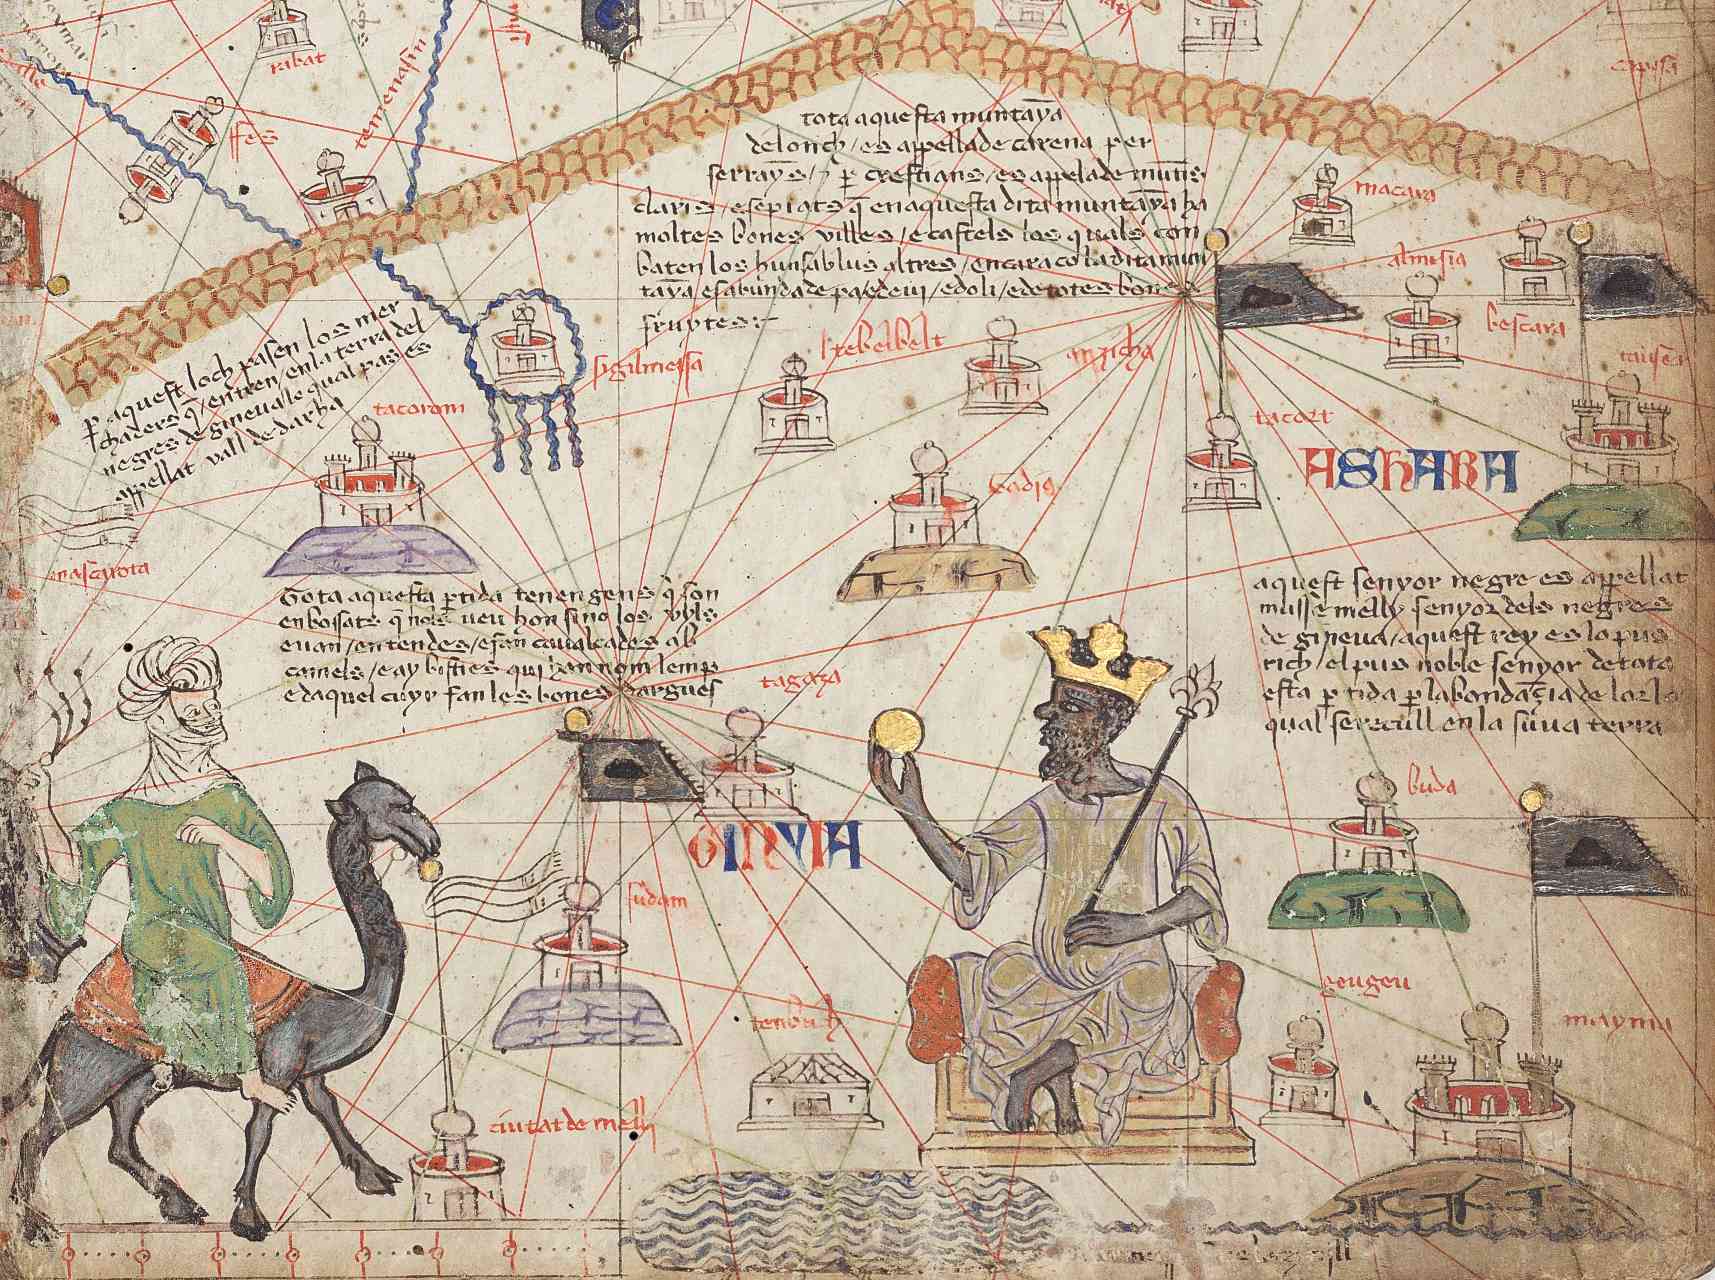 Detalė iš Katalonijos atlaso 6 lapo, kuriame parodyta Vakarų Sachara. Atlaso kalnai yra viršuje, o Nigerio upė - apačioje. Mansa Musa pavaizduotas sėdintis soste ir laikantis auksinę monetą.